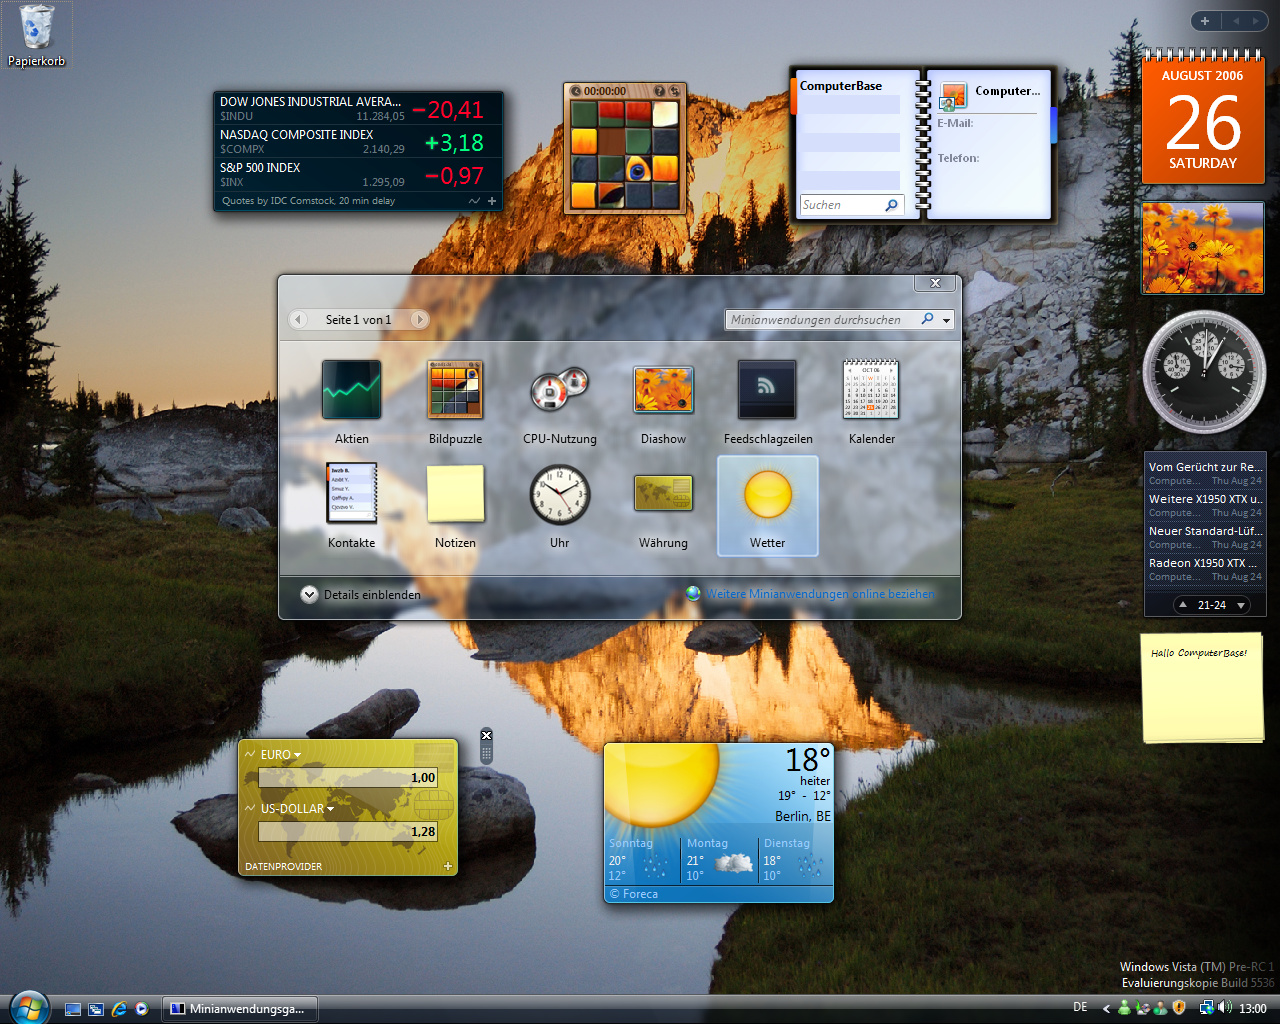 Windows Vista Build 5536 - Sidebar und Gadgets 2